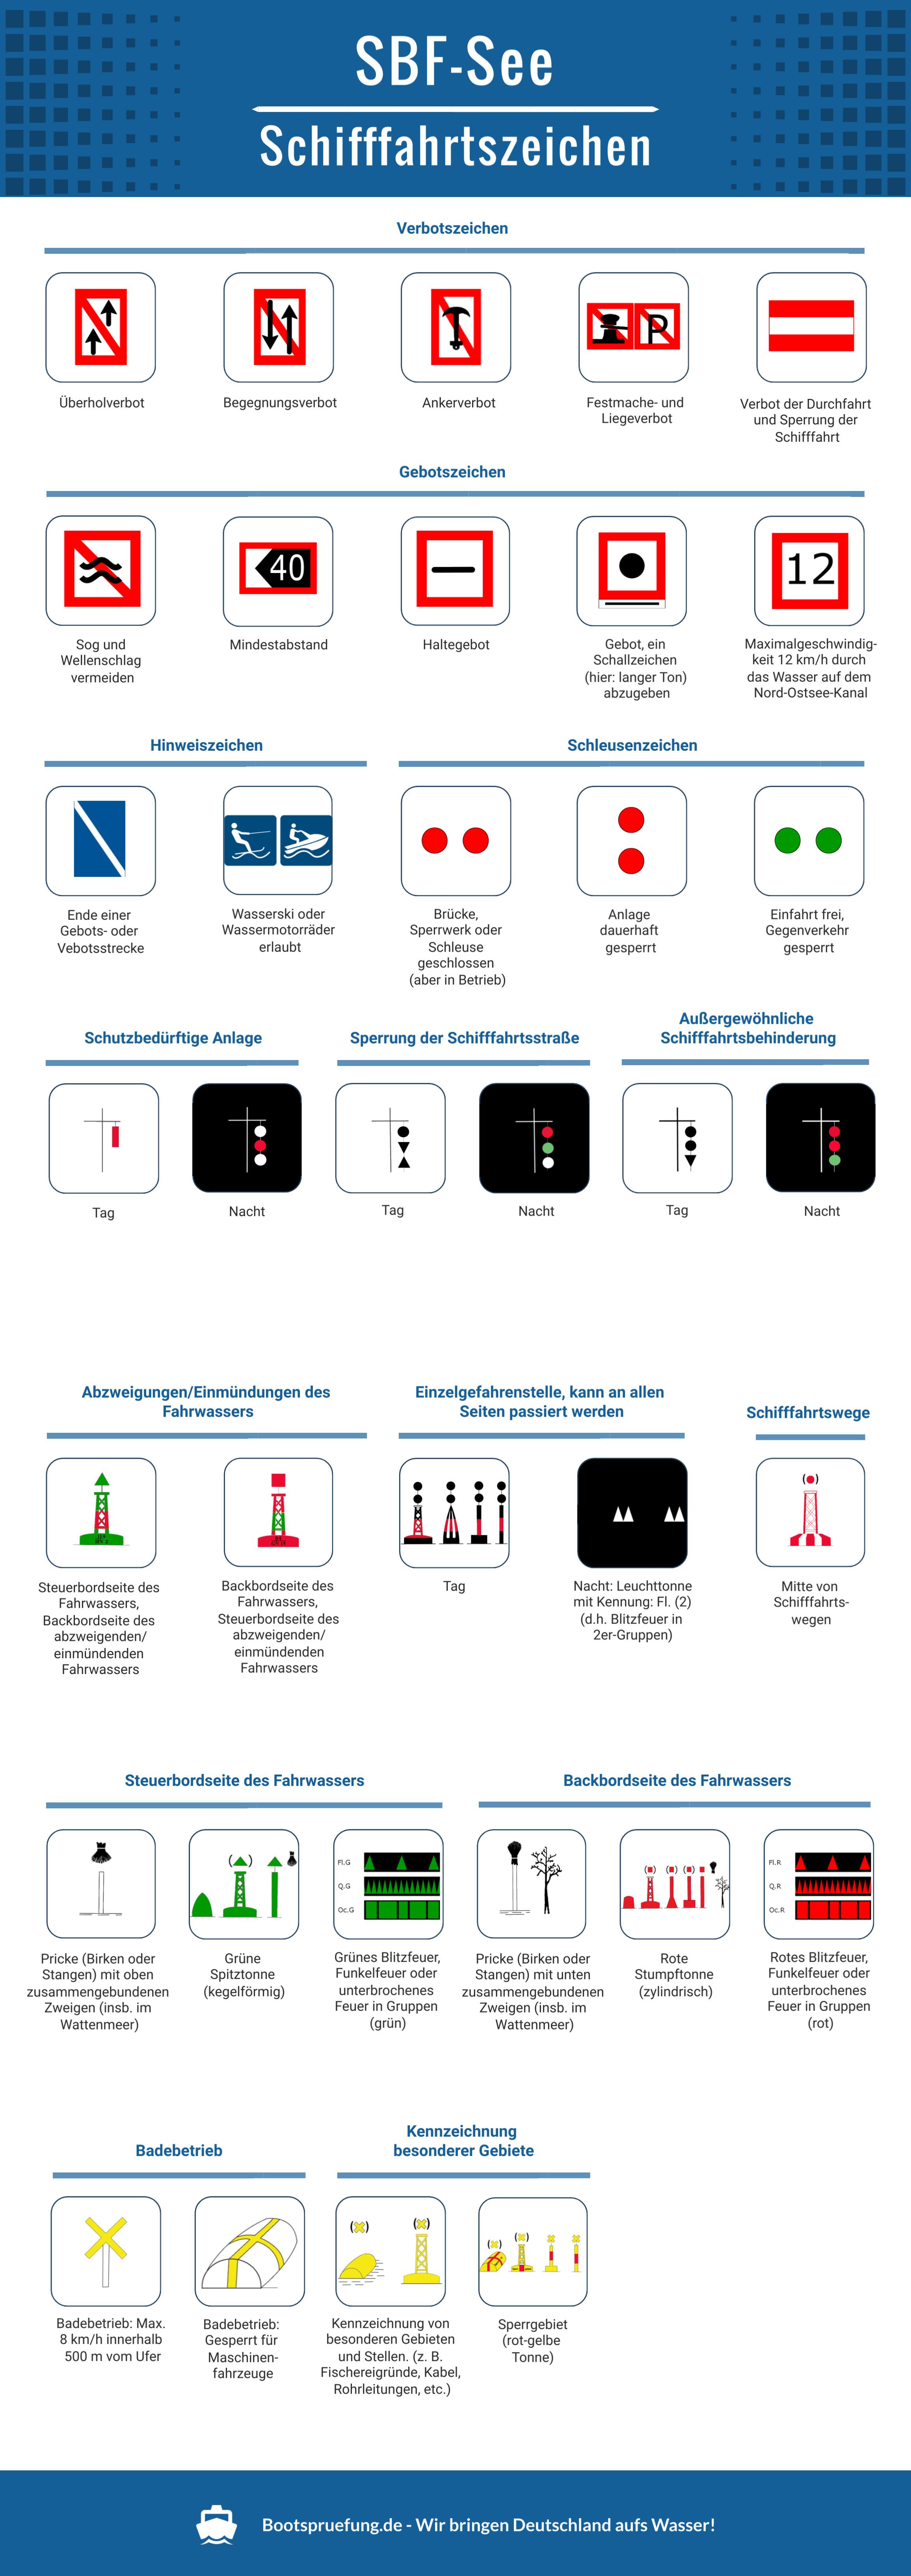 Alle Schifffahrtszeichen für den SBF-See 